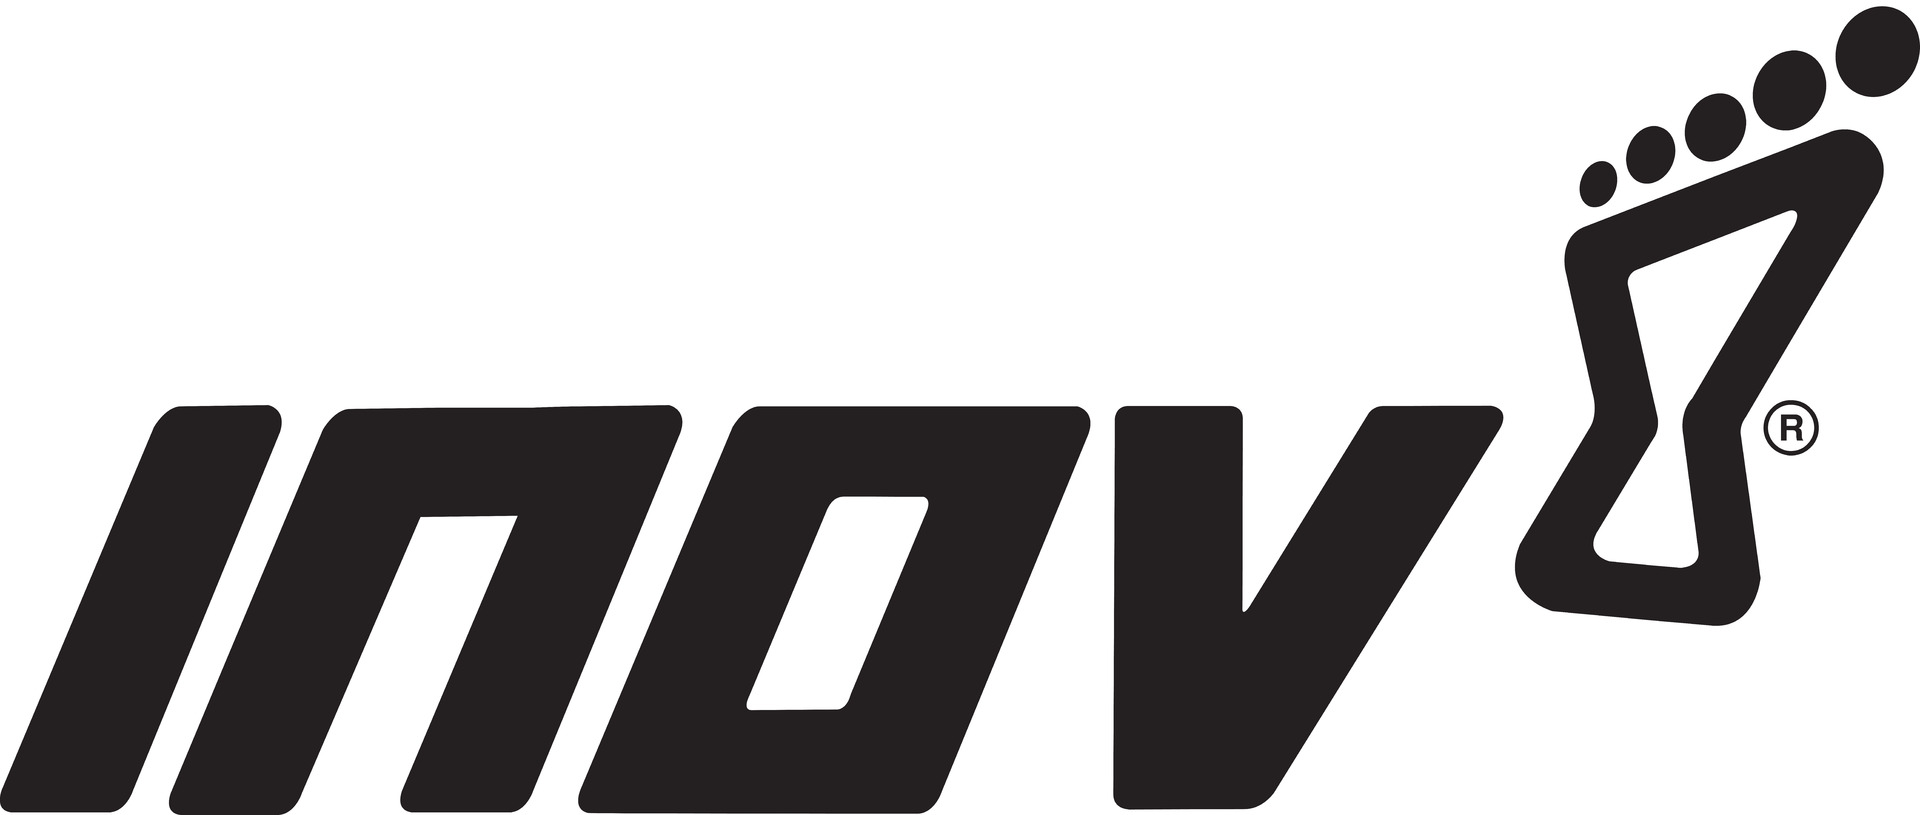 Logo inov-8